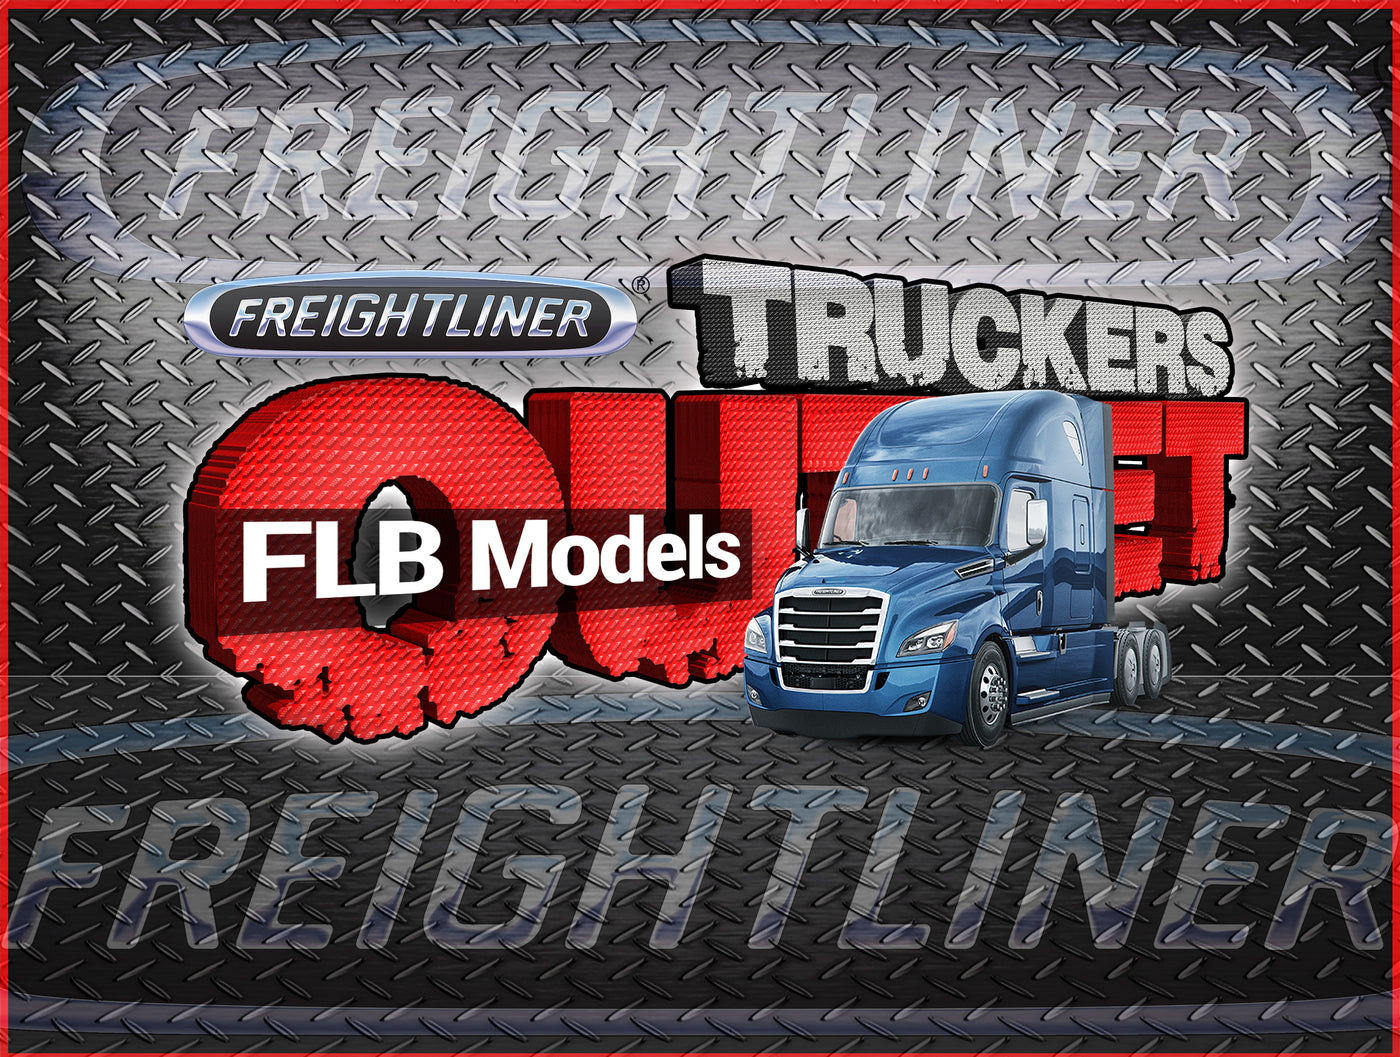 Freightliner FLB Models